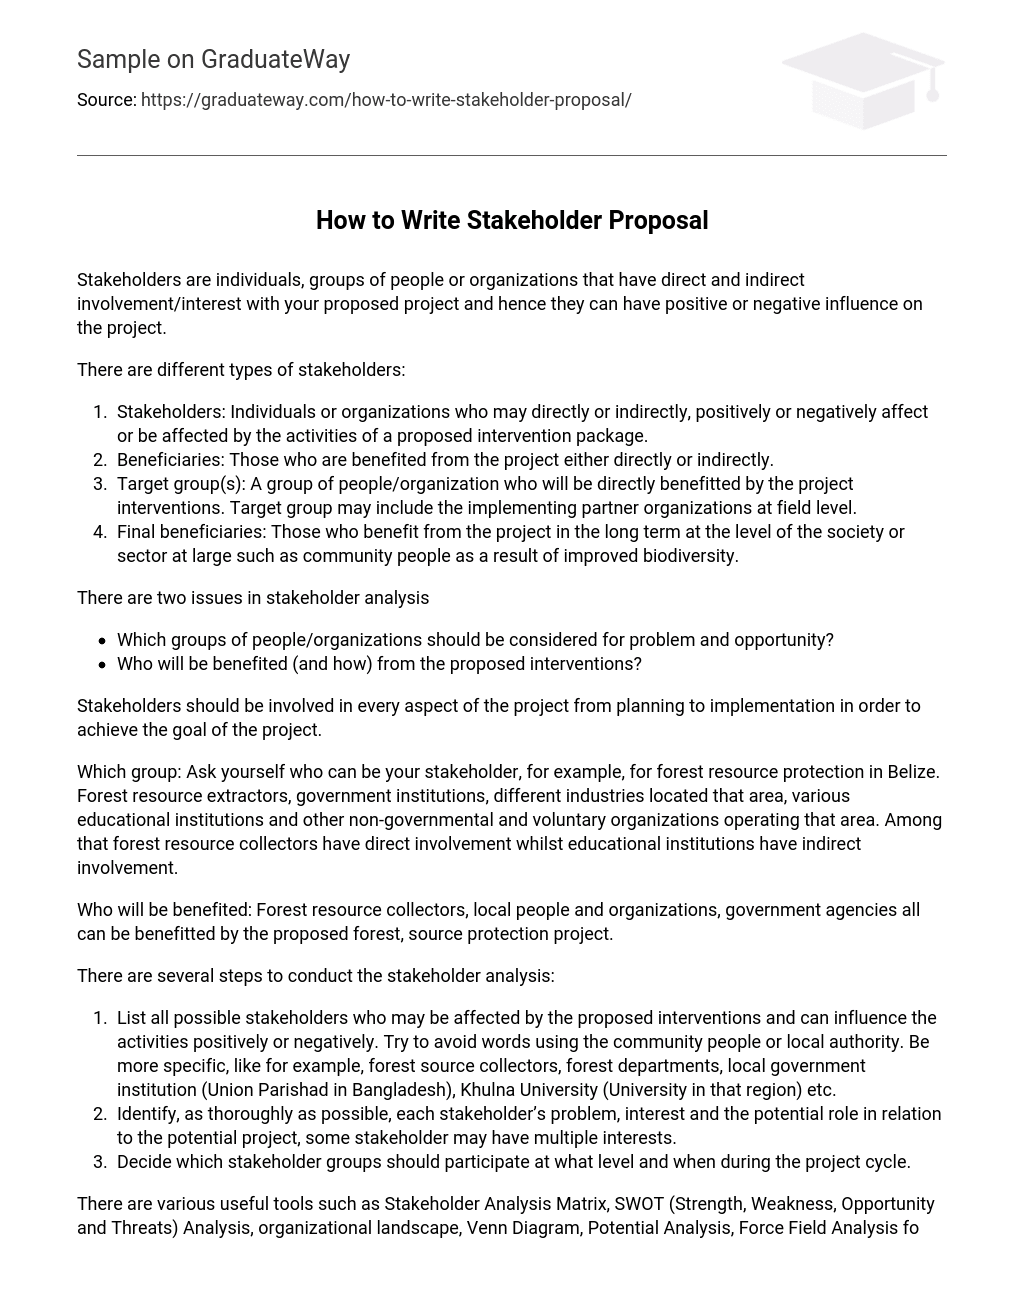 How to Write Stakeholder Proposal? Analysis